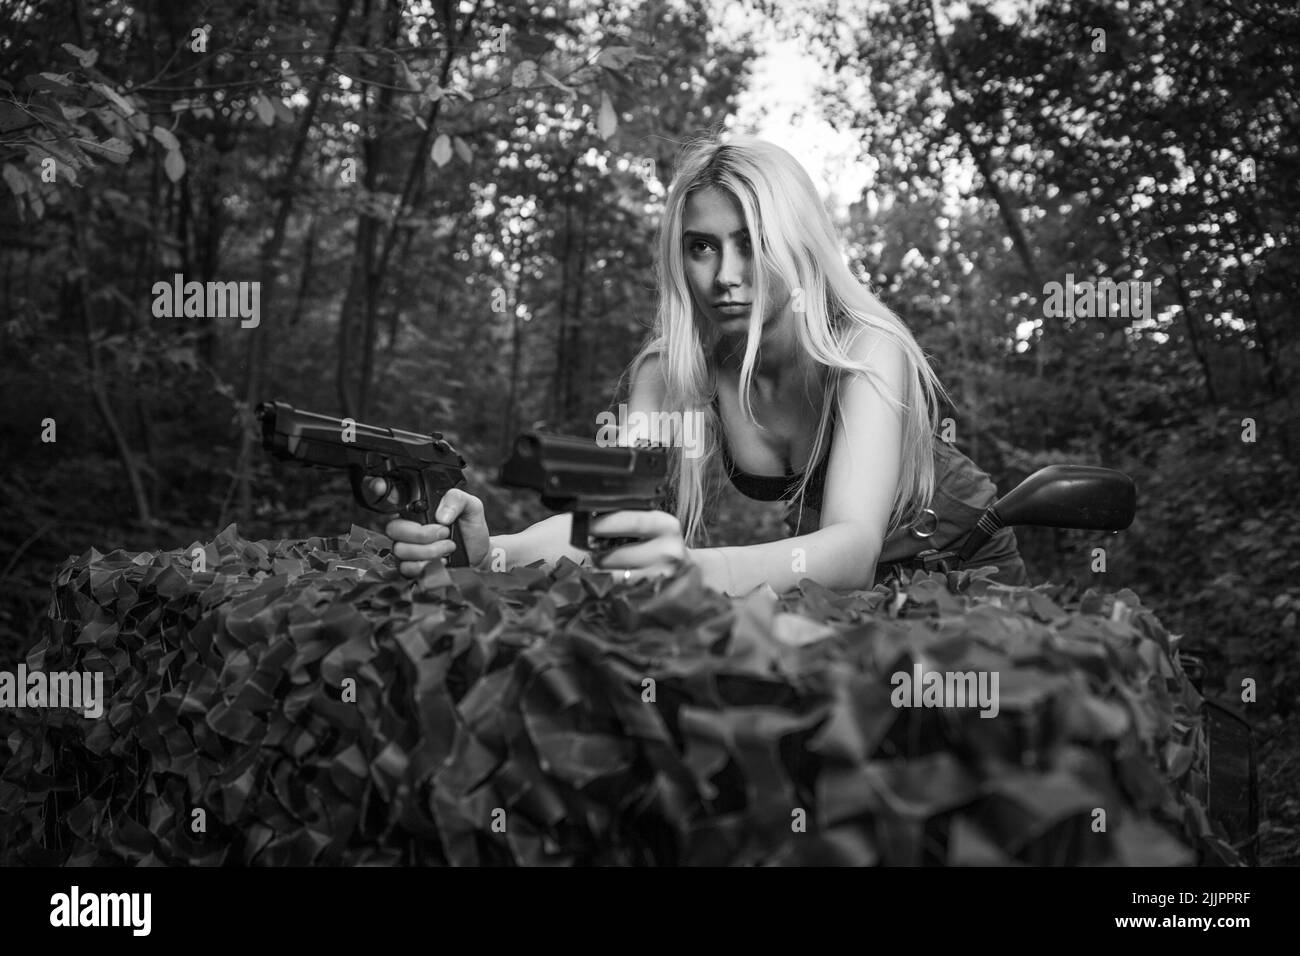 Ein Porträt einer kaukasischen blonden Frau, die auf einem Fahrrad sitzt und in Graustufen in einem Wald Waffen hält Stockfoto